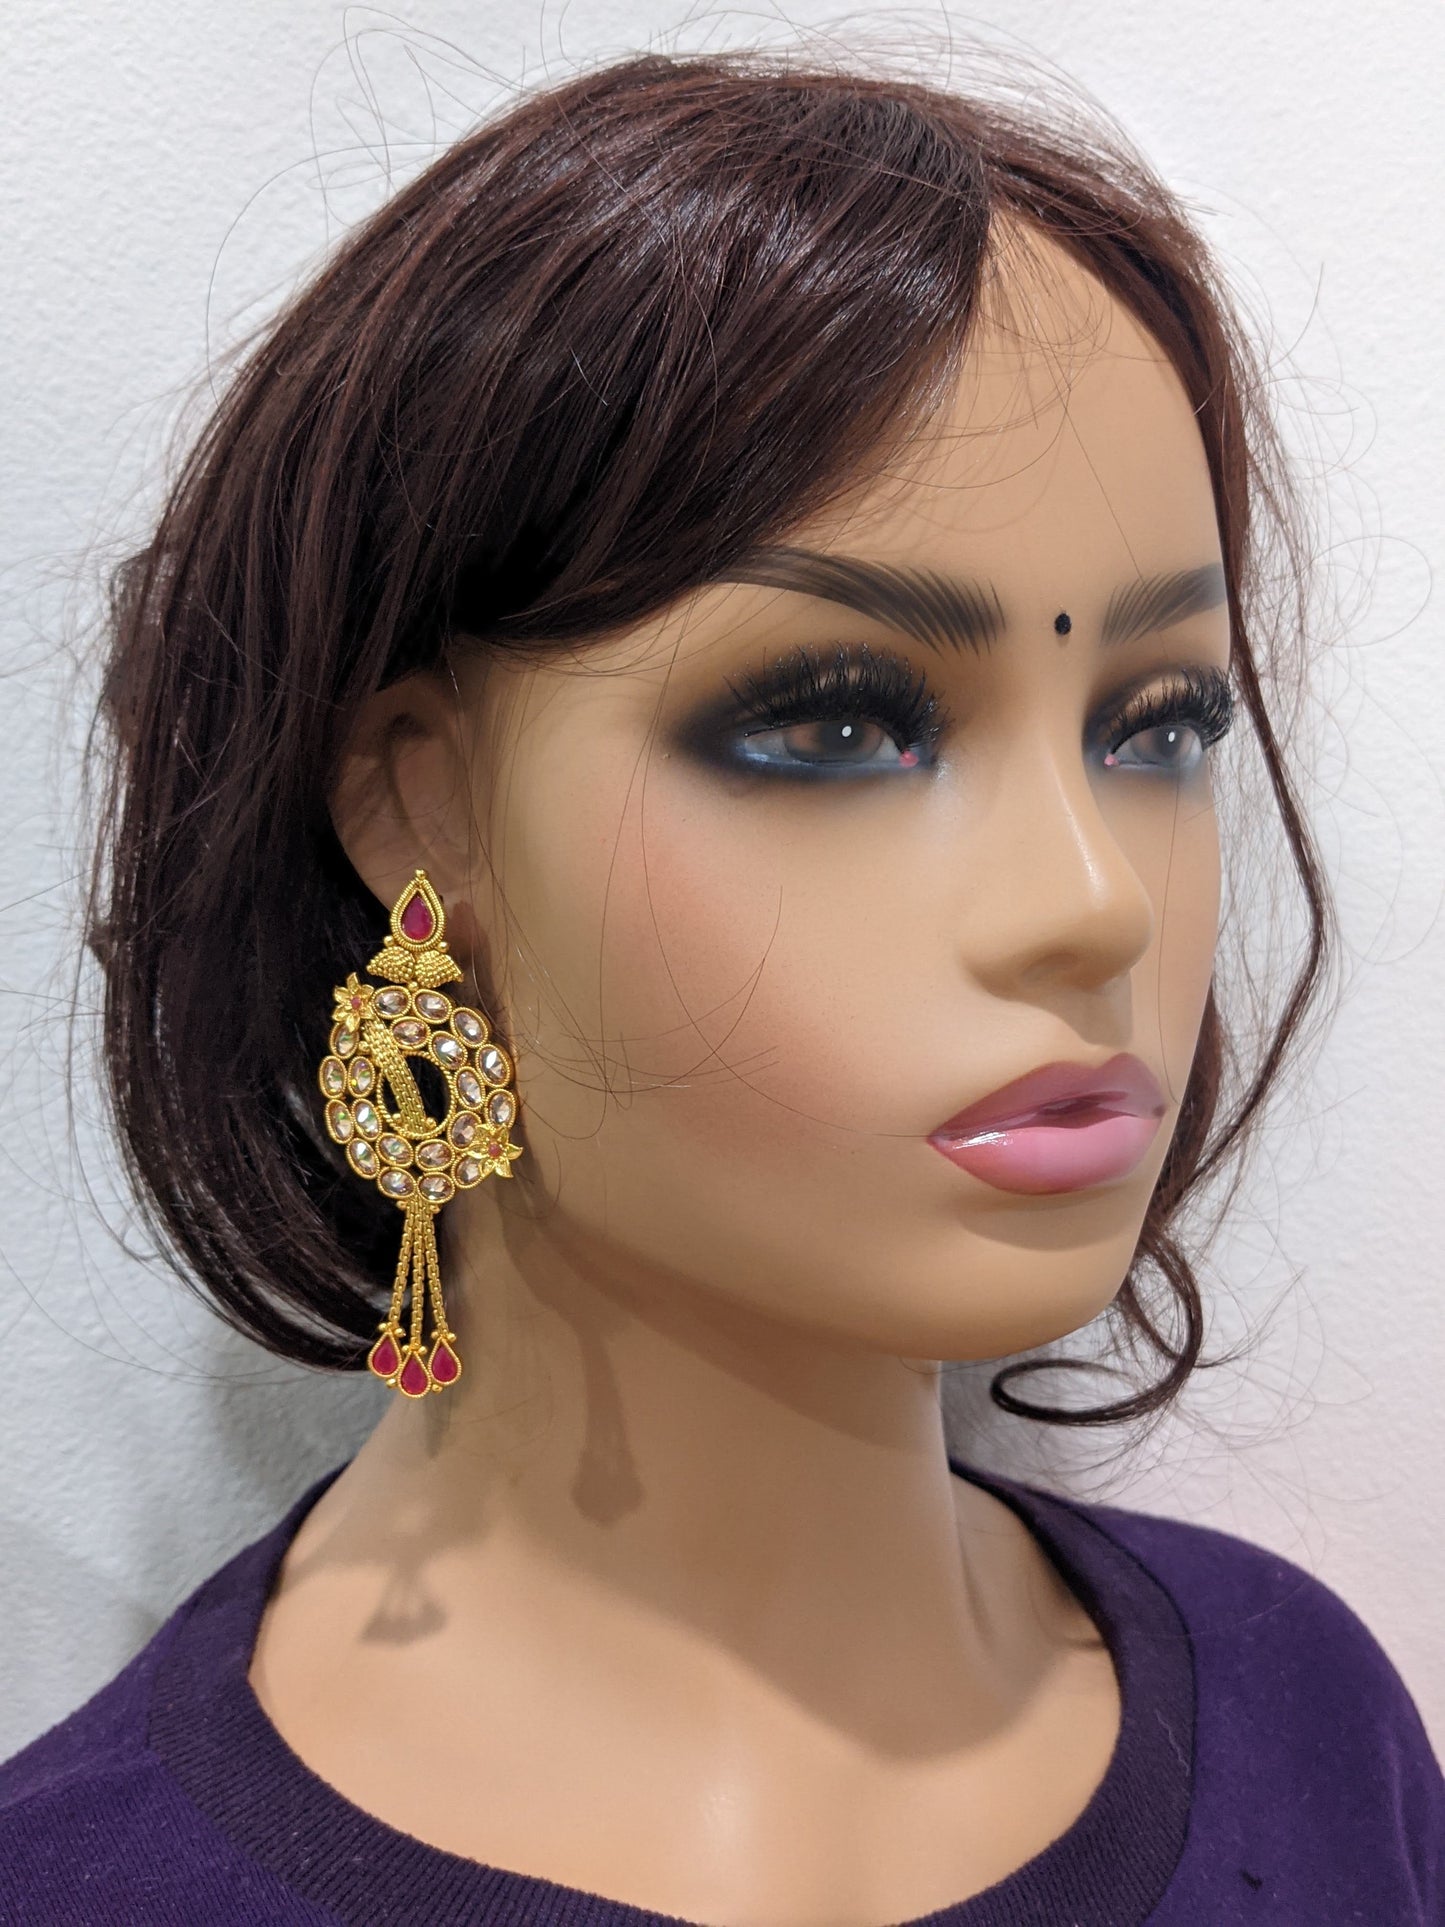 Flower design stylish Gold plated Polki Earrings